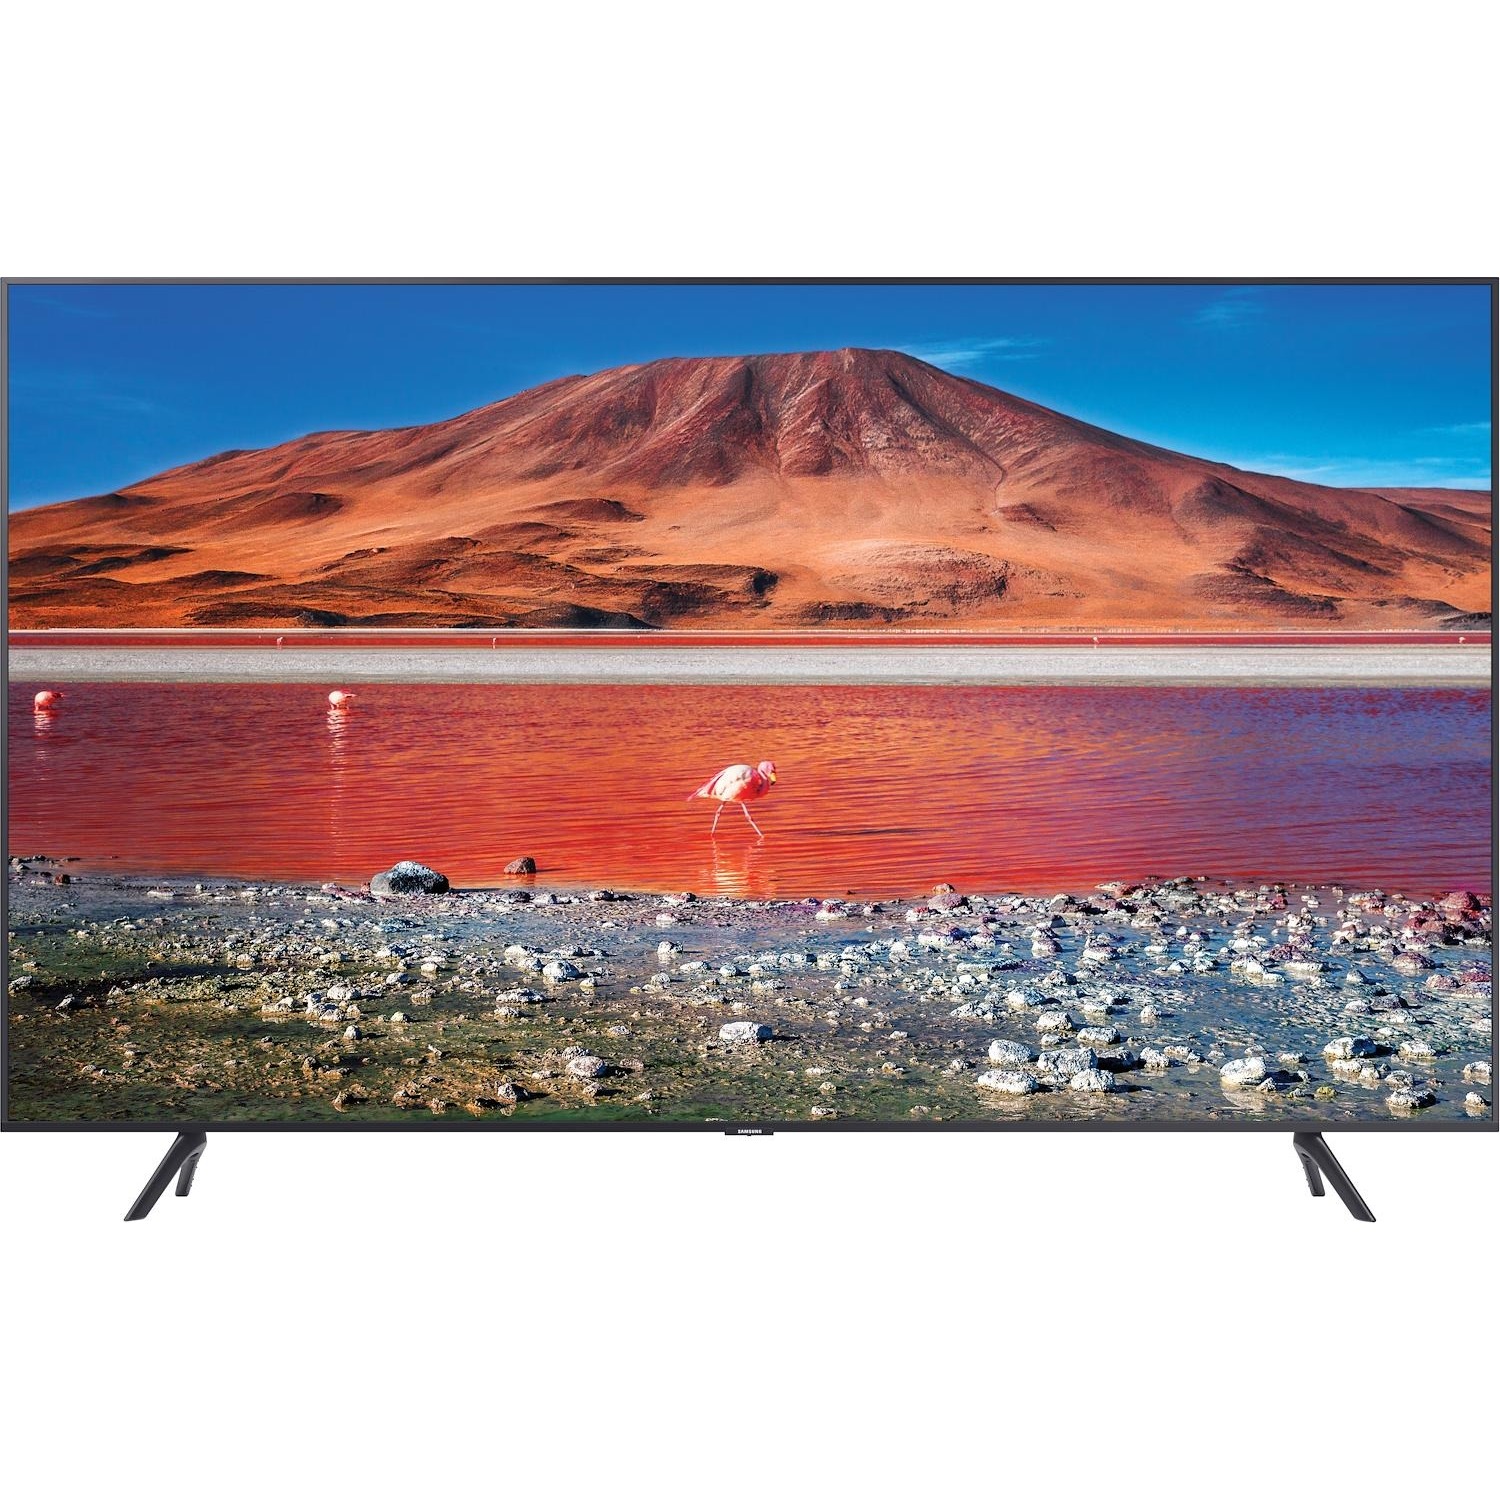 Immagine per TV LED Smart 4K UHD Samsung 50TU7170 da DIMOStore